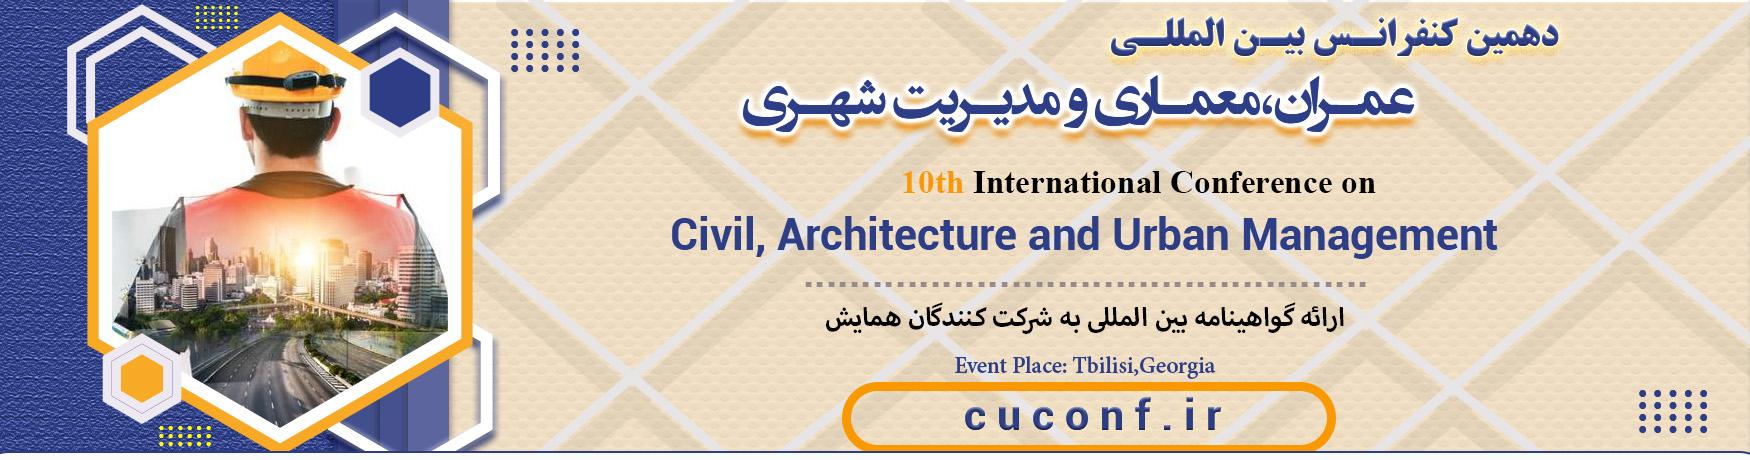 کنفرانس بین المللی عمران،معماری و مدیریت شهری	